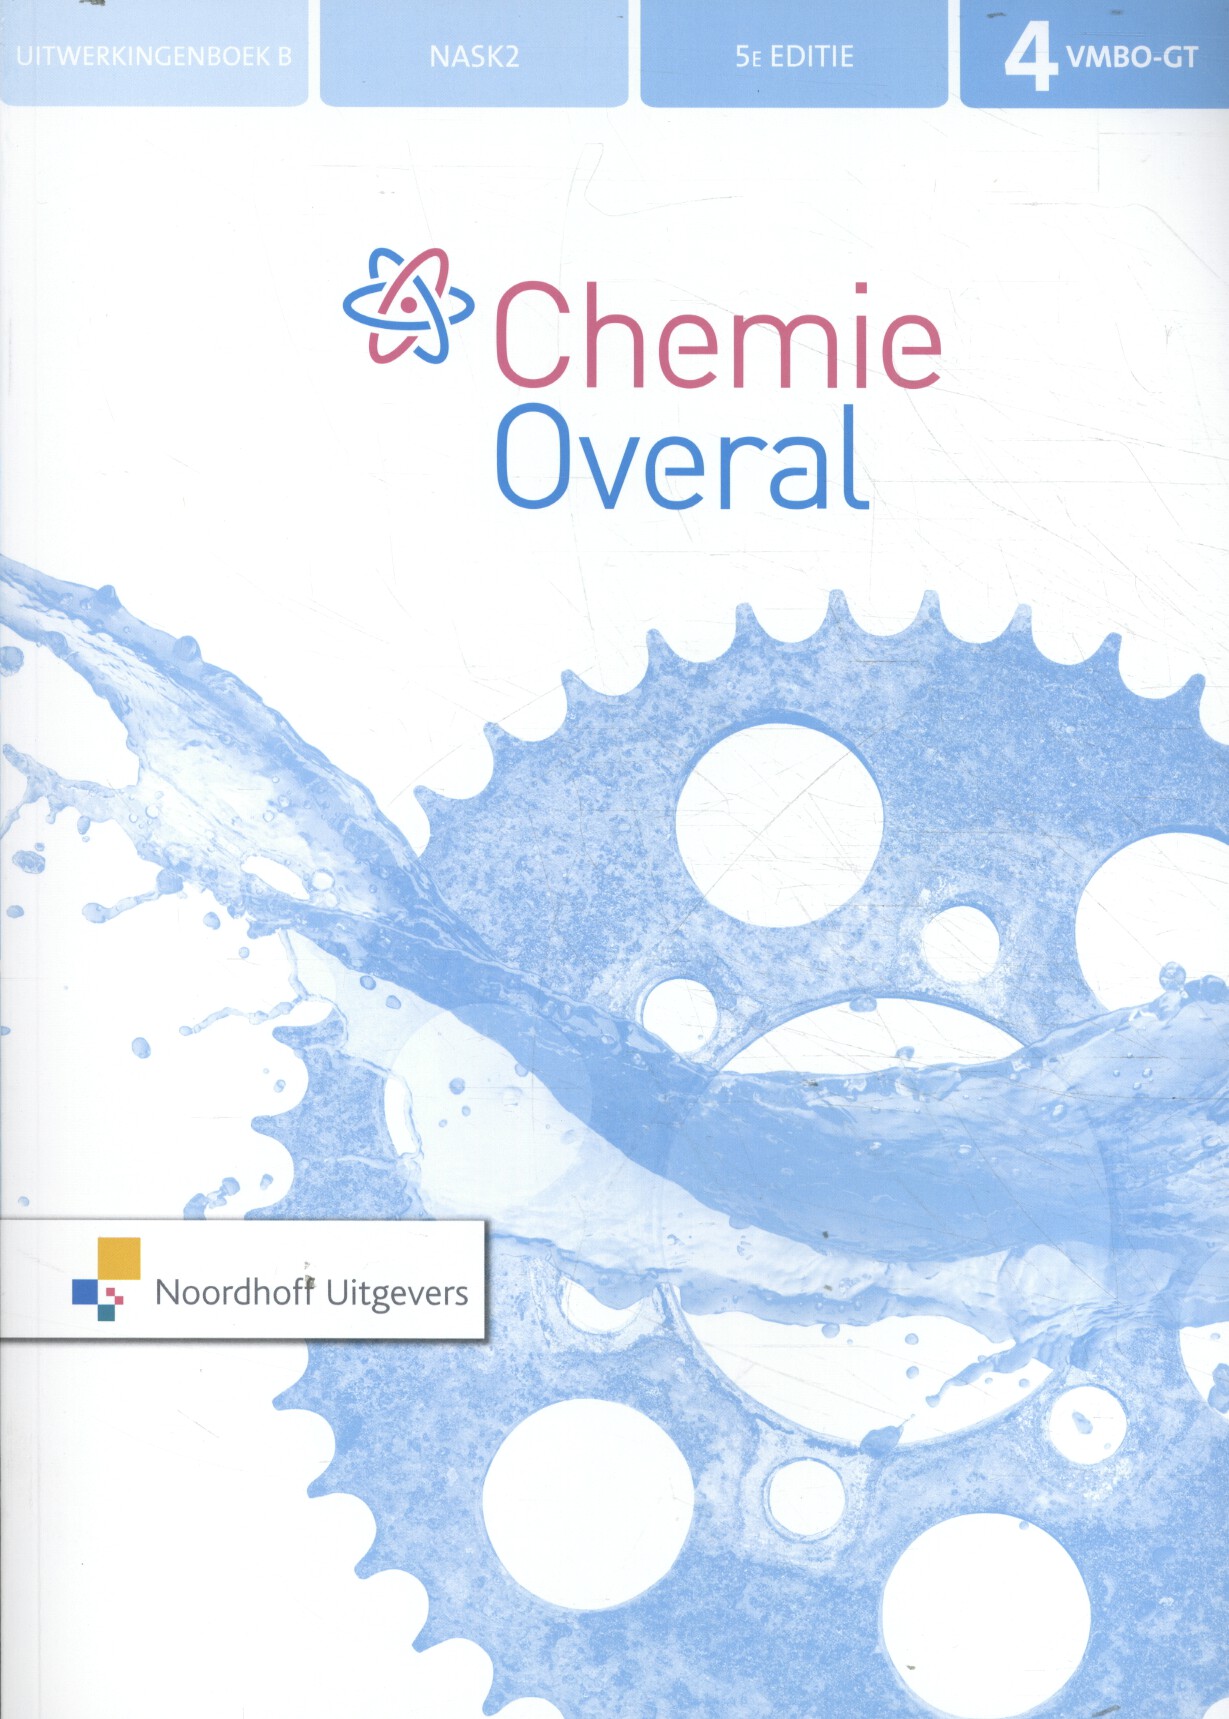 Chemie Overal vmbo-gt 4 uitwerkingenboek B